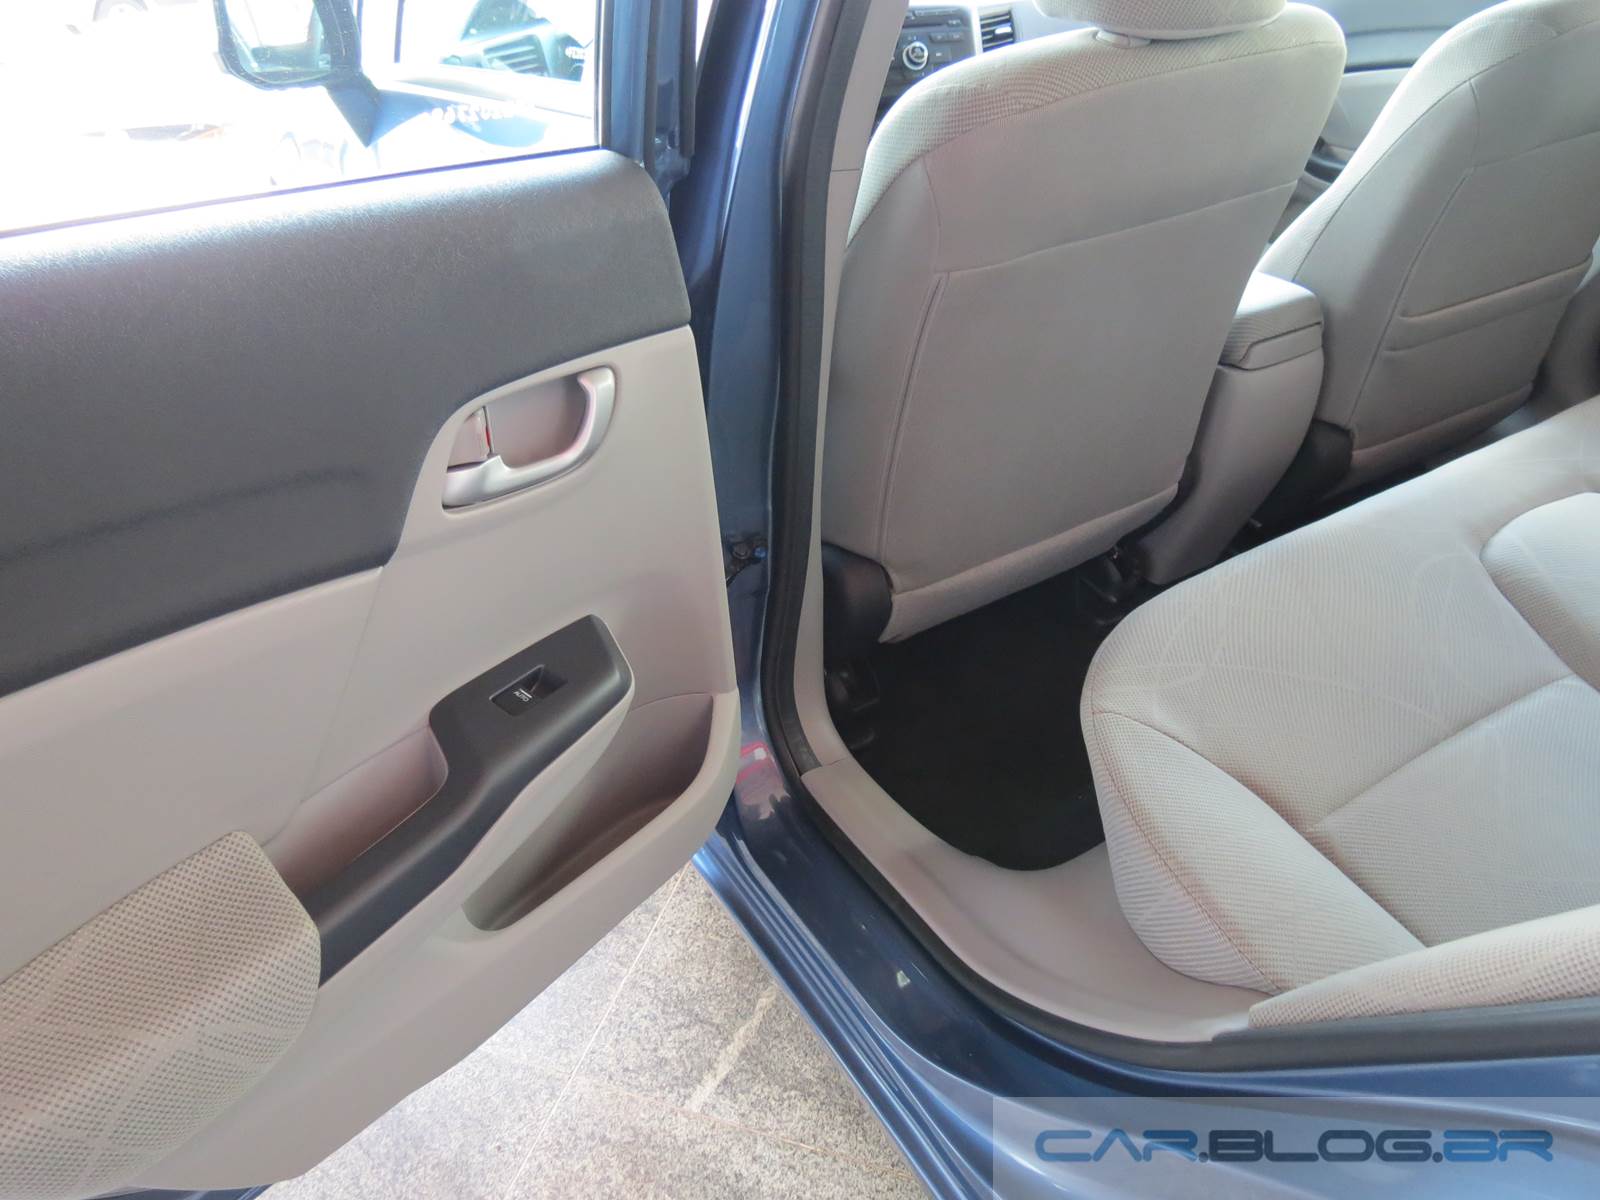 Honda Civic LXS 2015 - interior